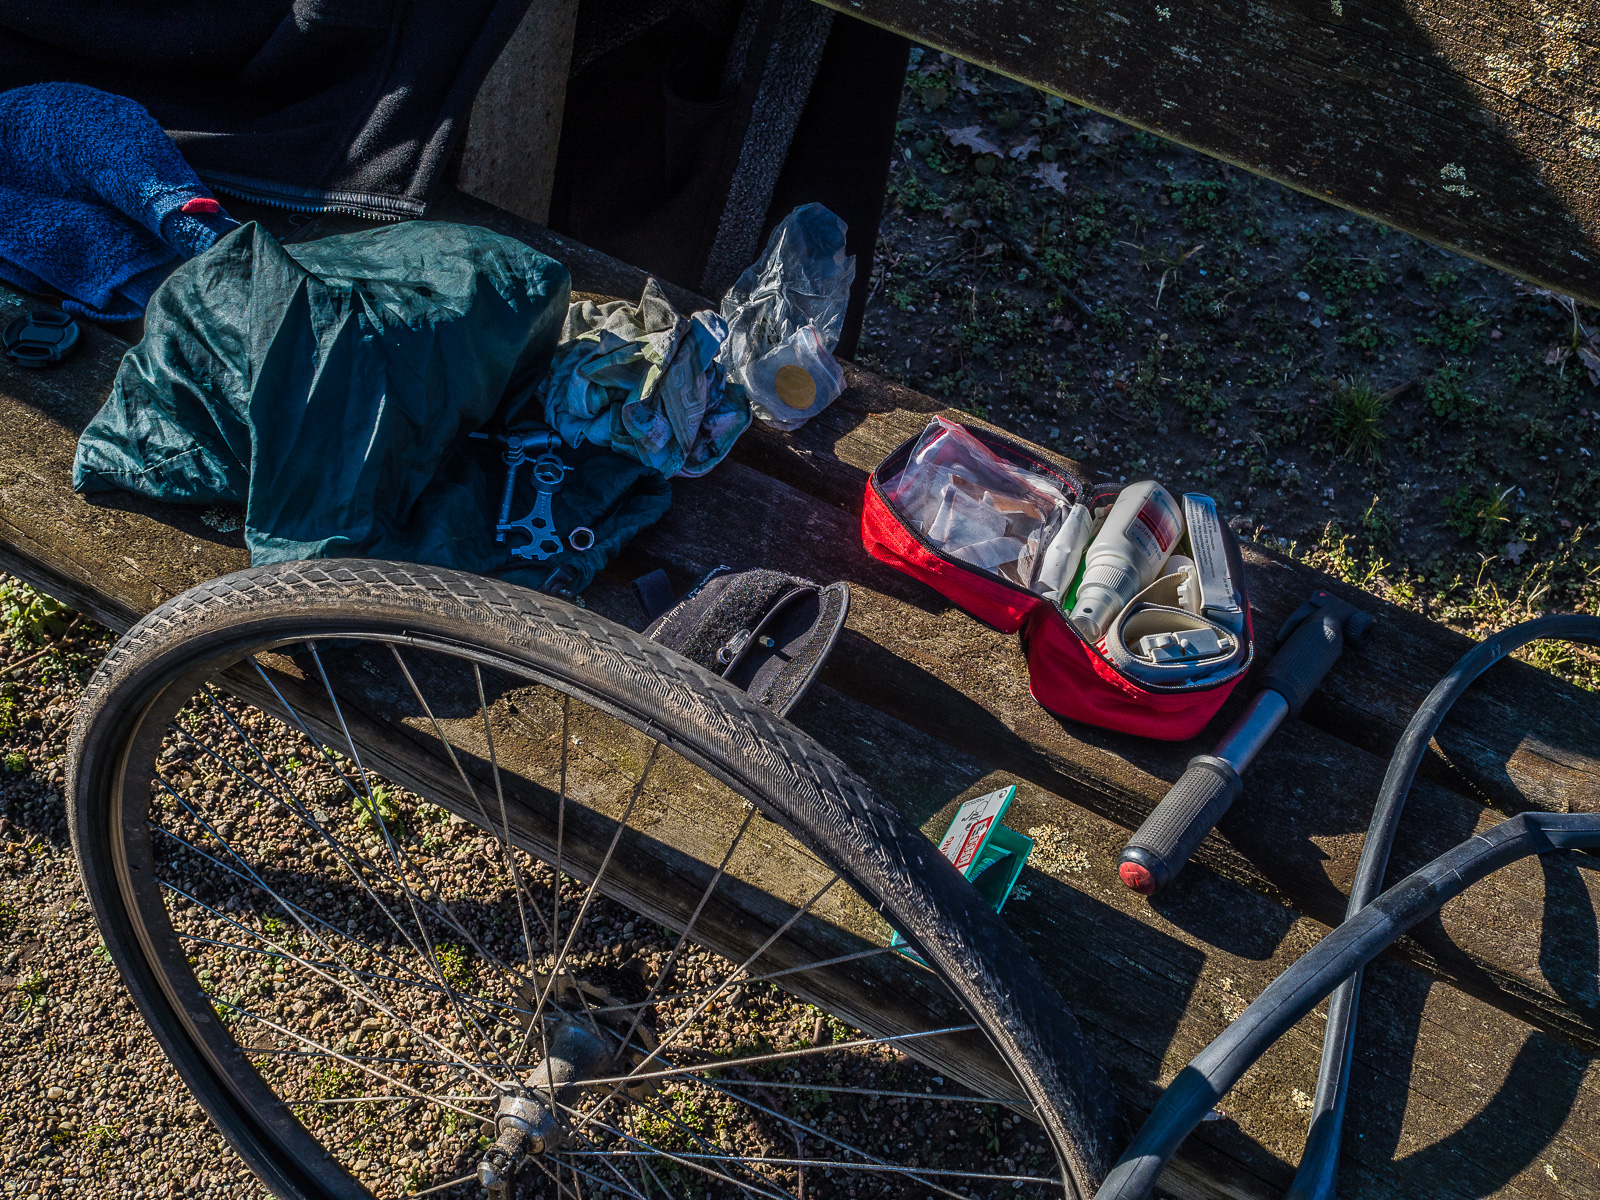 Ein ausgebautes Fahrrad-Hinterrad lehnt an einer Parkbank,drauf ausgebreitet diverse Werkstatt-Utensilien, eine Luftpumpe, ein Fahrradschlauch und ein kleiner Erste-Hilfe-Beutel.